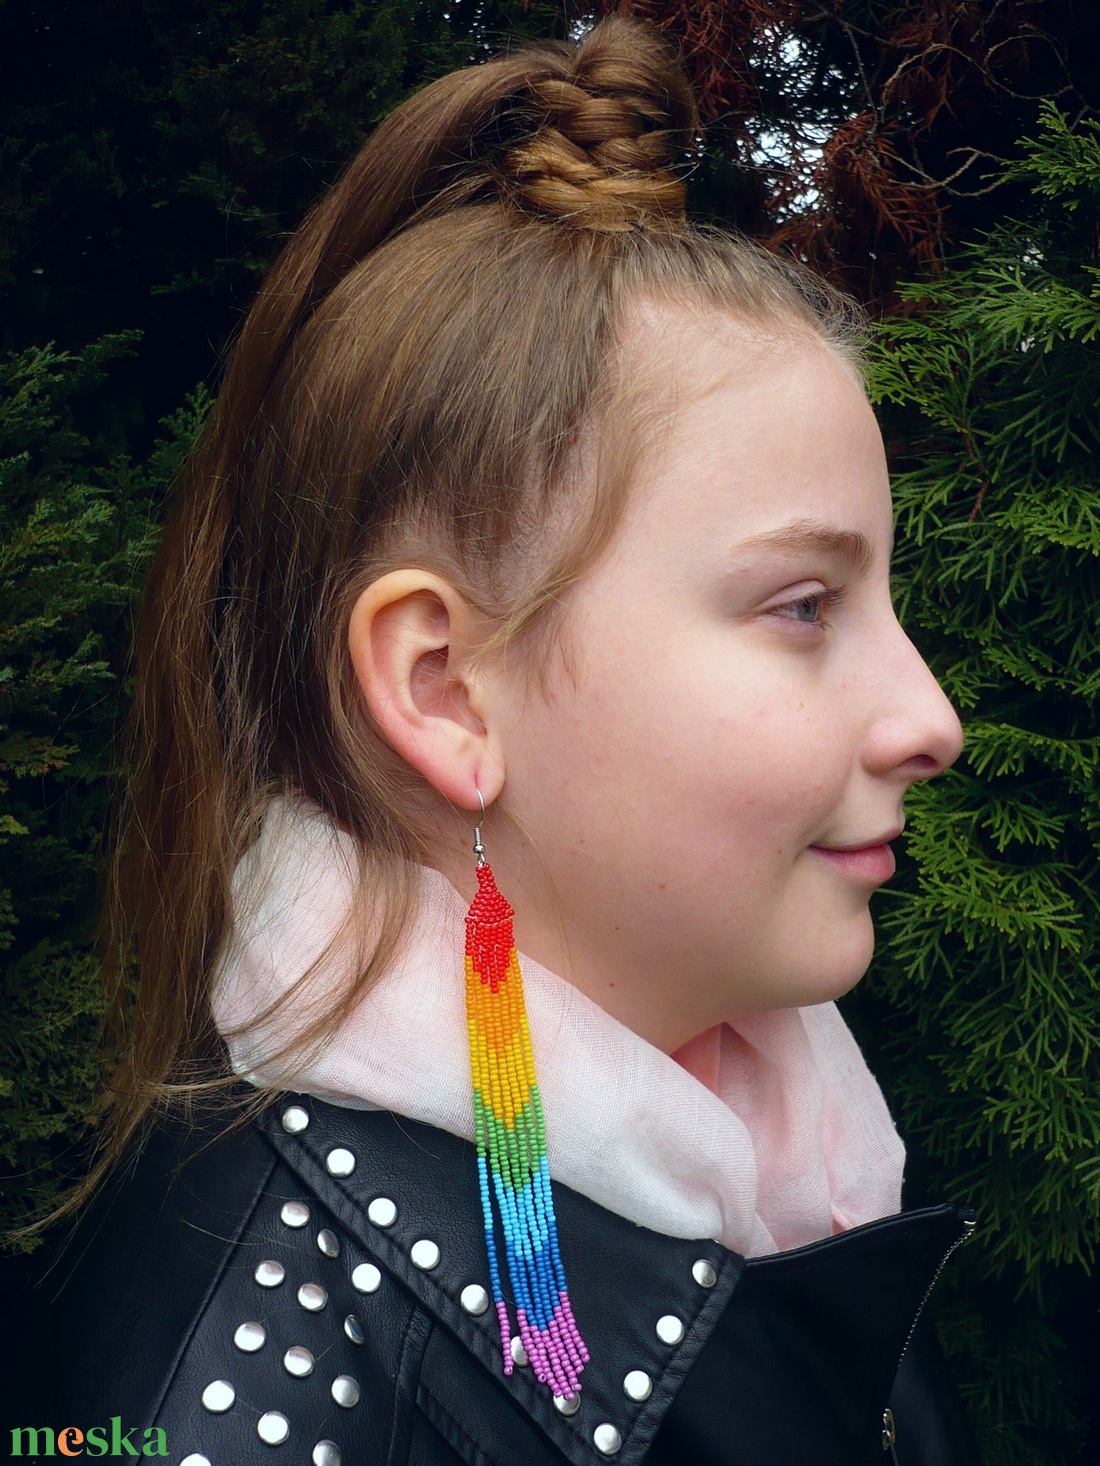 VÁLLIG ÉRŐ, extra hosszú szépséges szivárvány színű gyöngy fülbevaló - ékszer - fülbevaló - csillár fülbevaló - Meska.hu